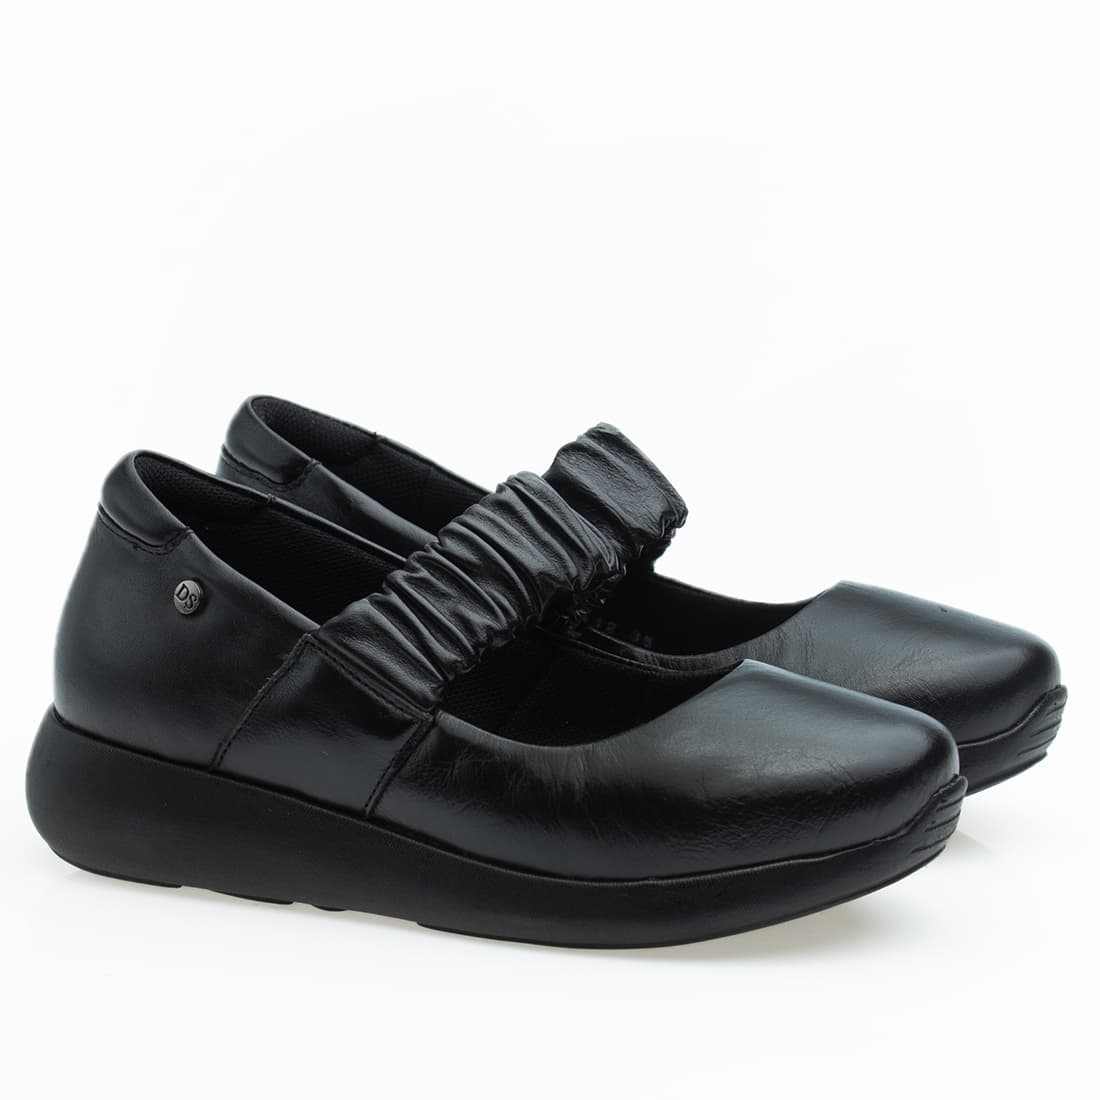 Sapato Feminino Super Confortável em Couro Legítimo - 6868 - Preto 34 -  Calçados Femininos, Sapato Anatômico- Sapatos Confortáveis na Loja de  Calçados Doctor Pé